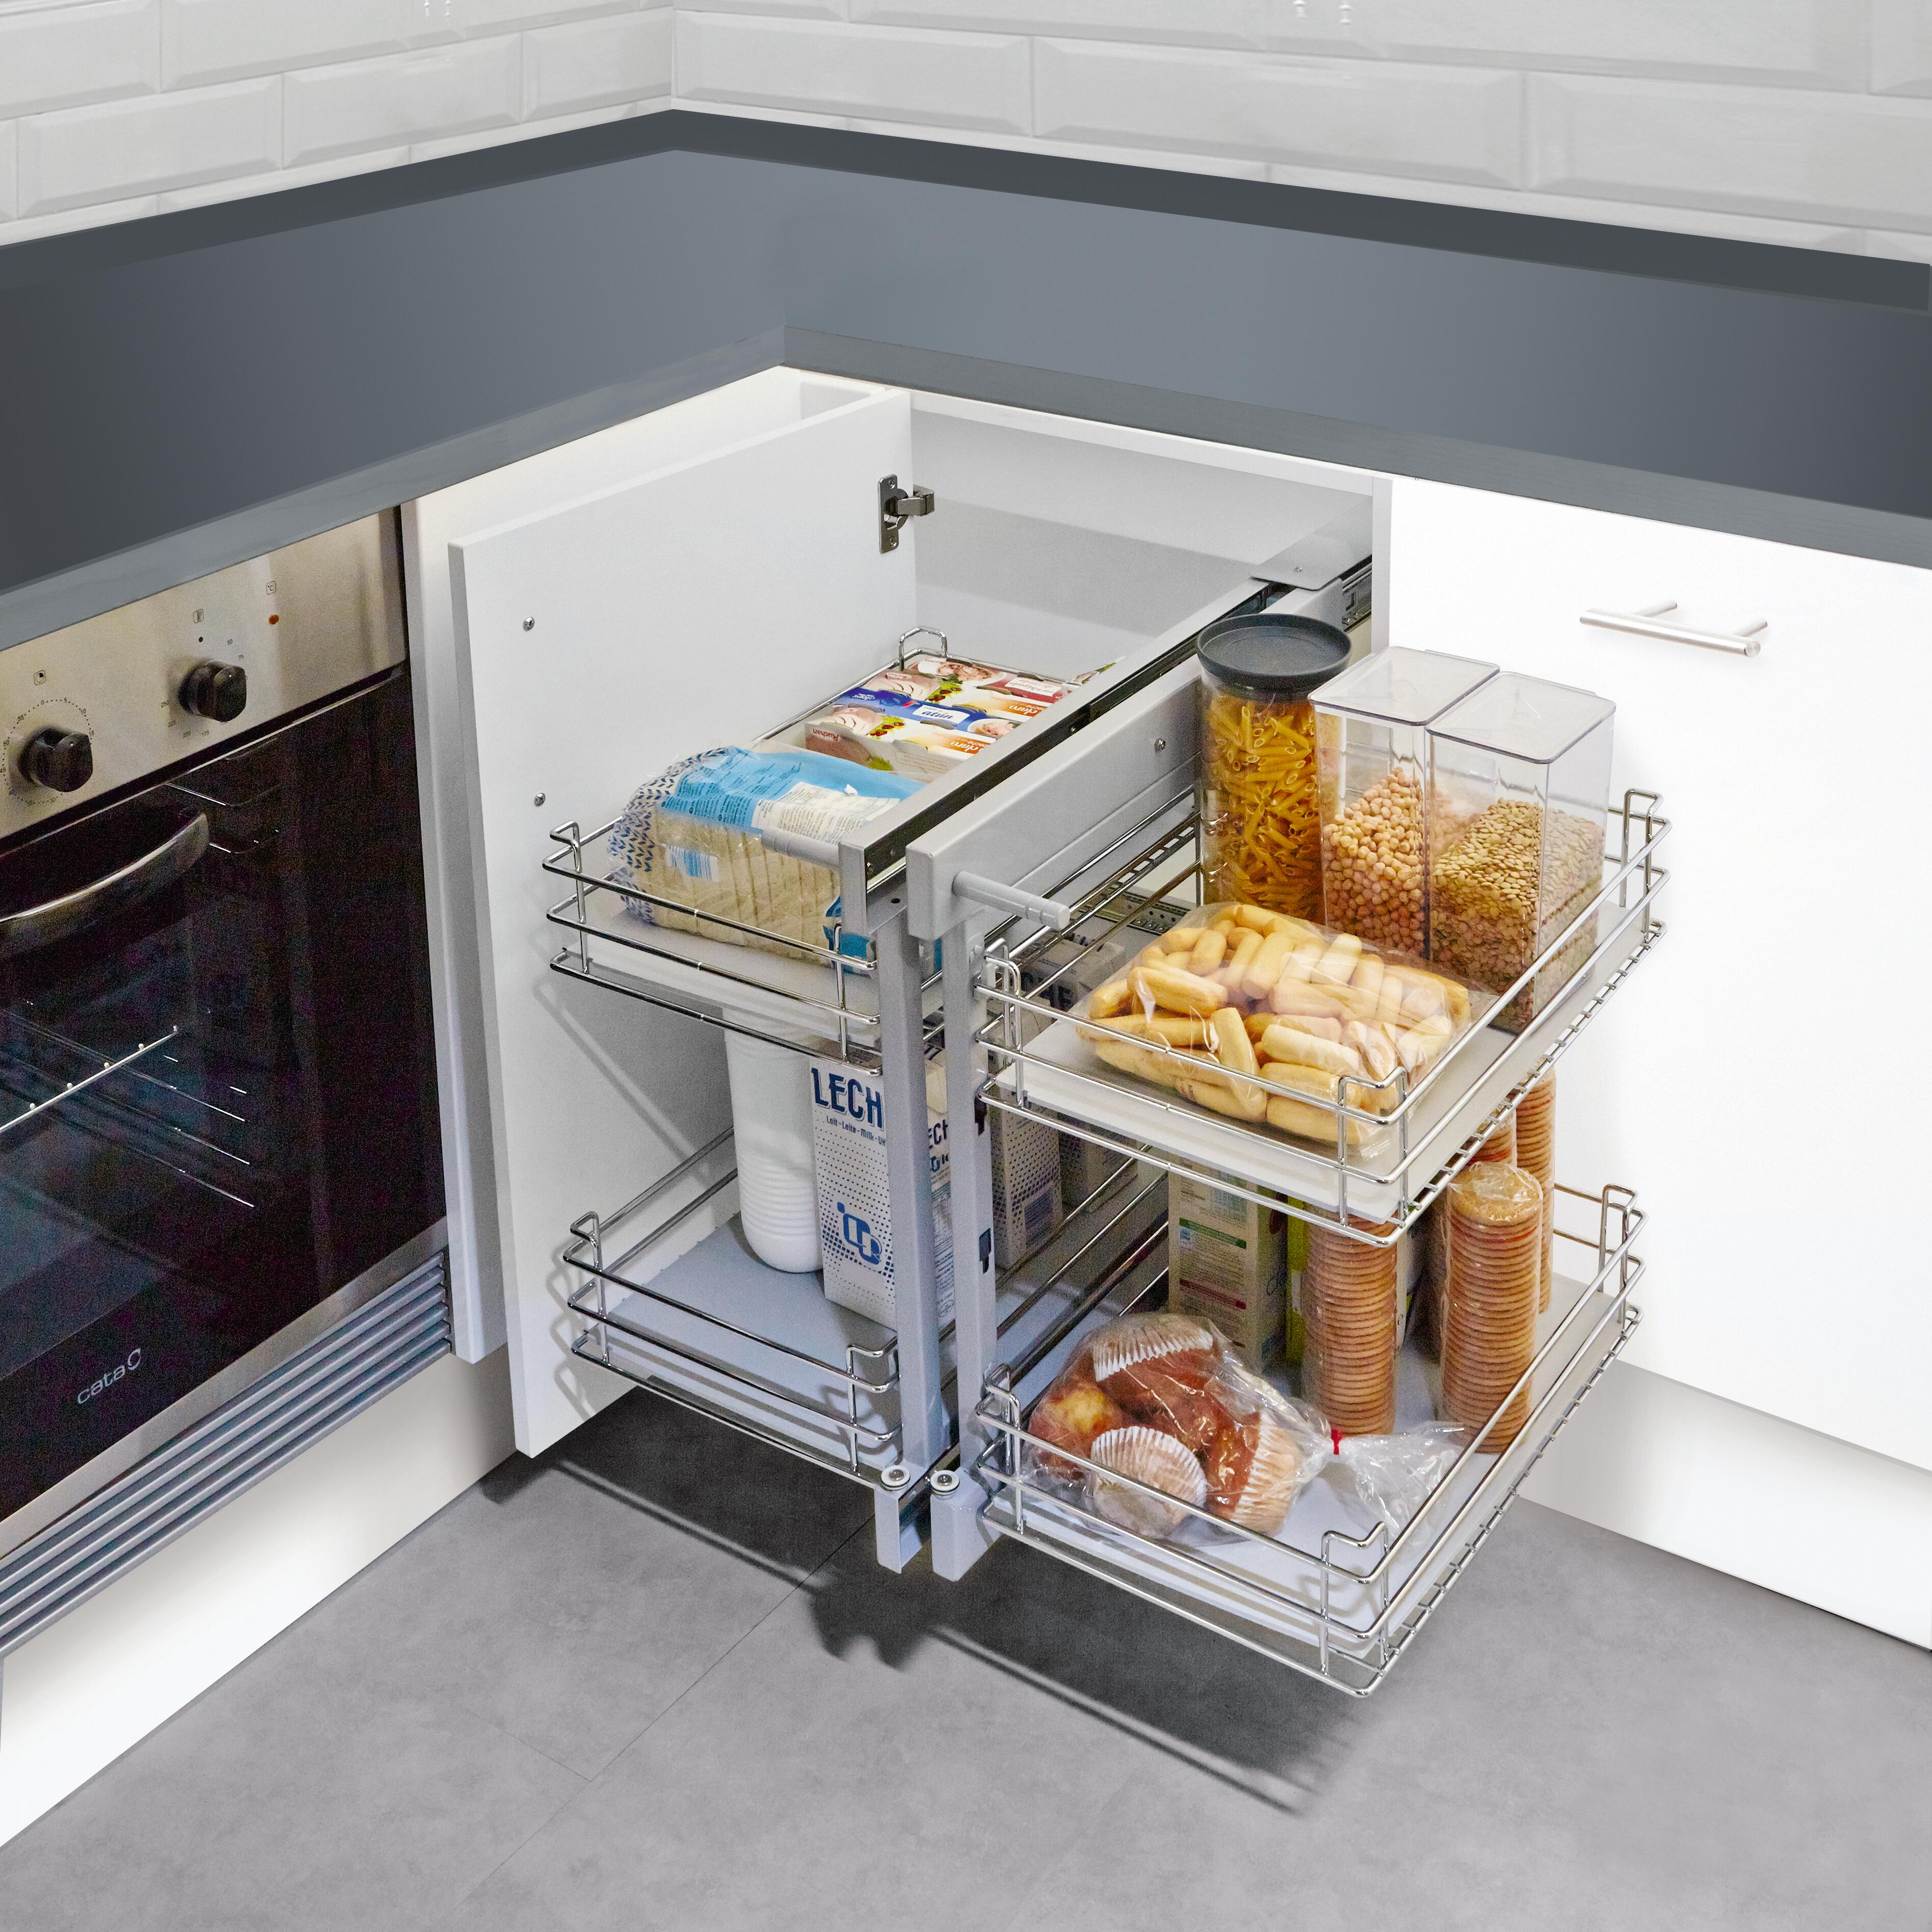 Cinco estanterías de cocina para ganar espacio y proteger nuestro microondas